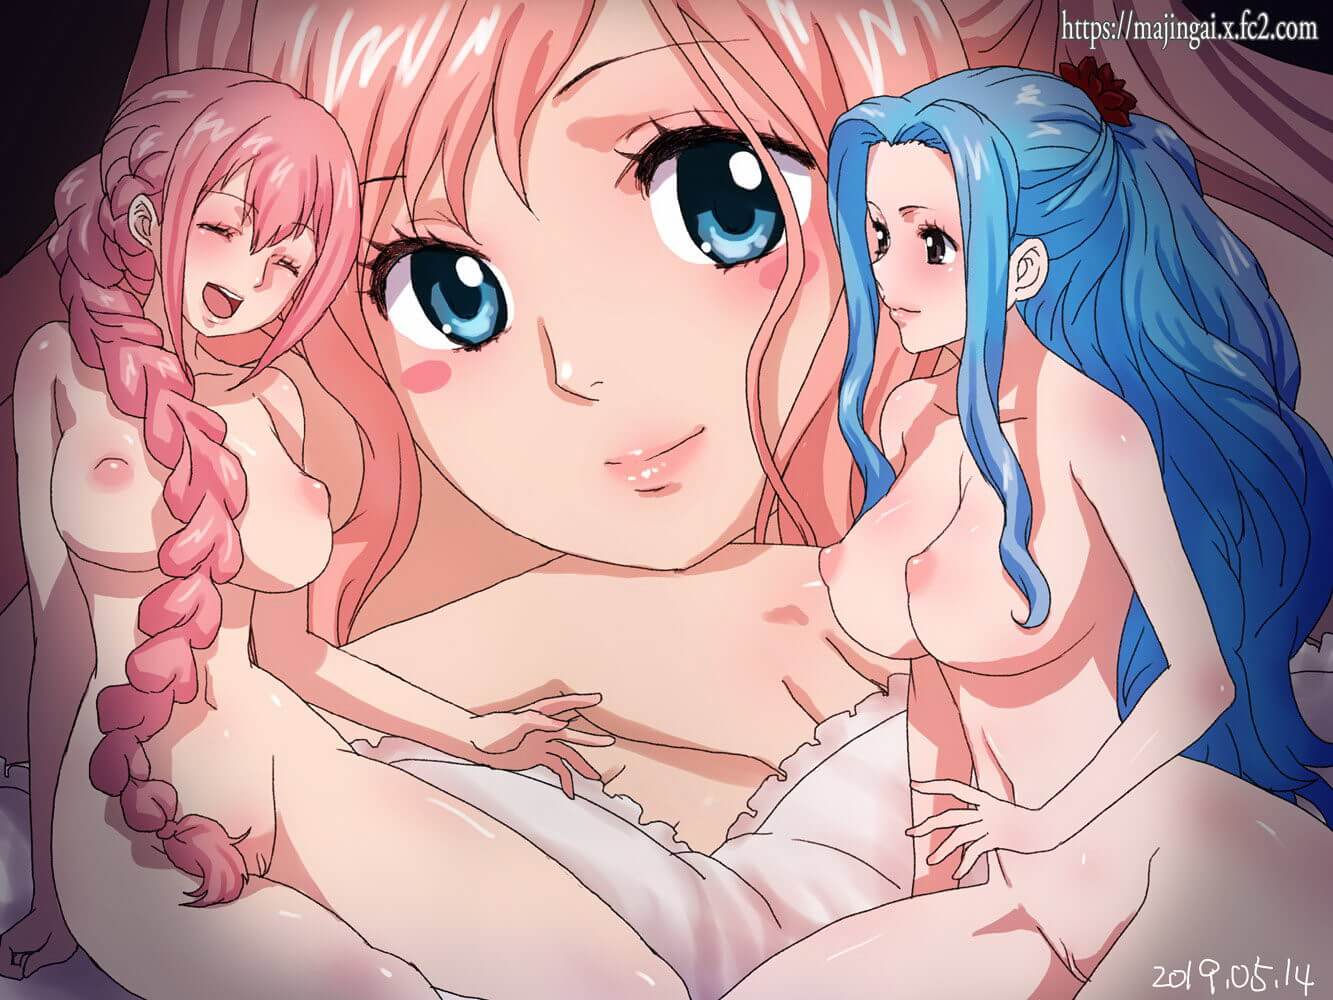 Shirahoshi et Vivi nues montrent leurs lourdes poitrines de waifu - One Piece Hentai